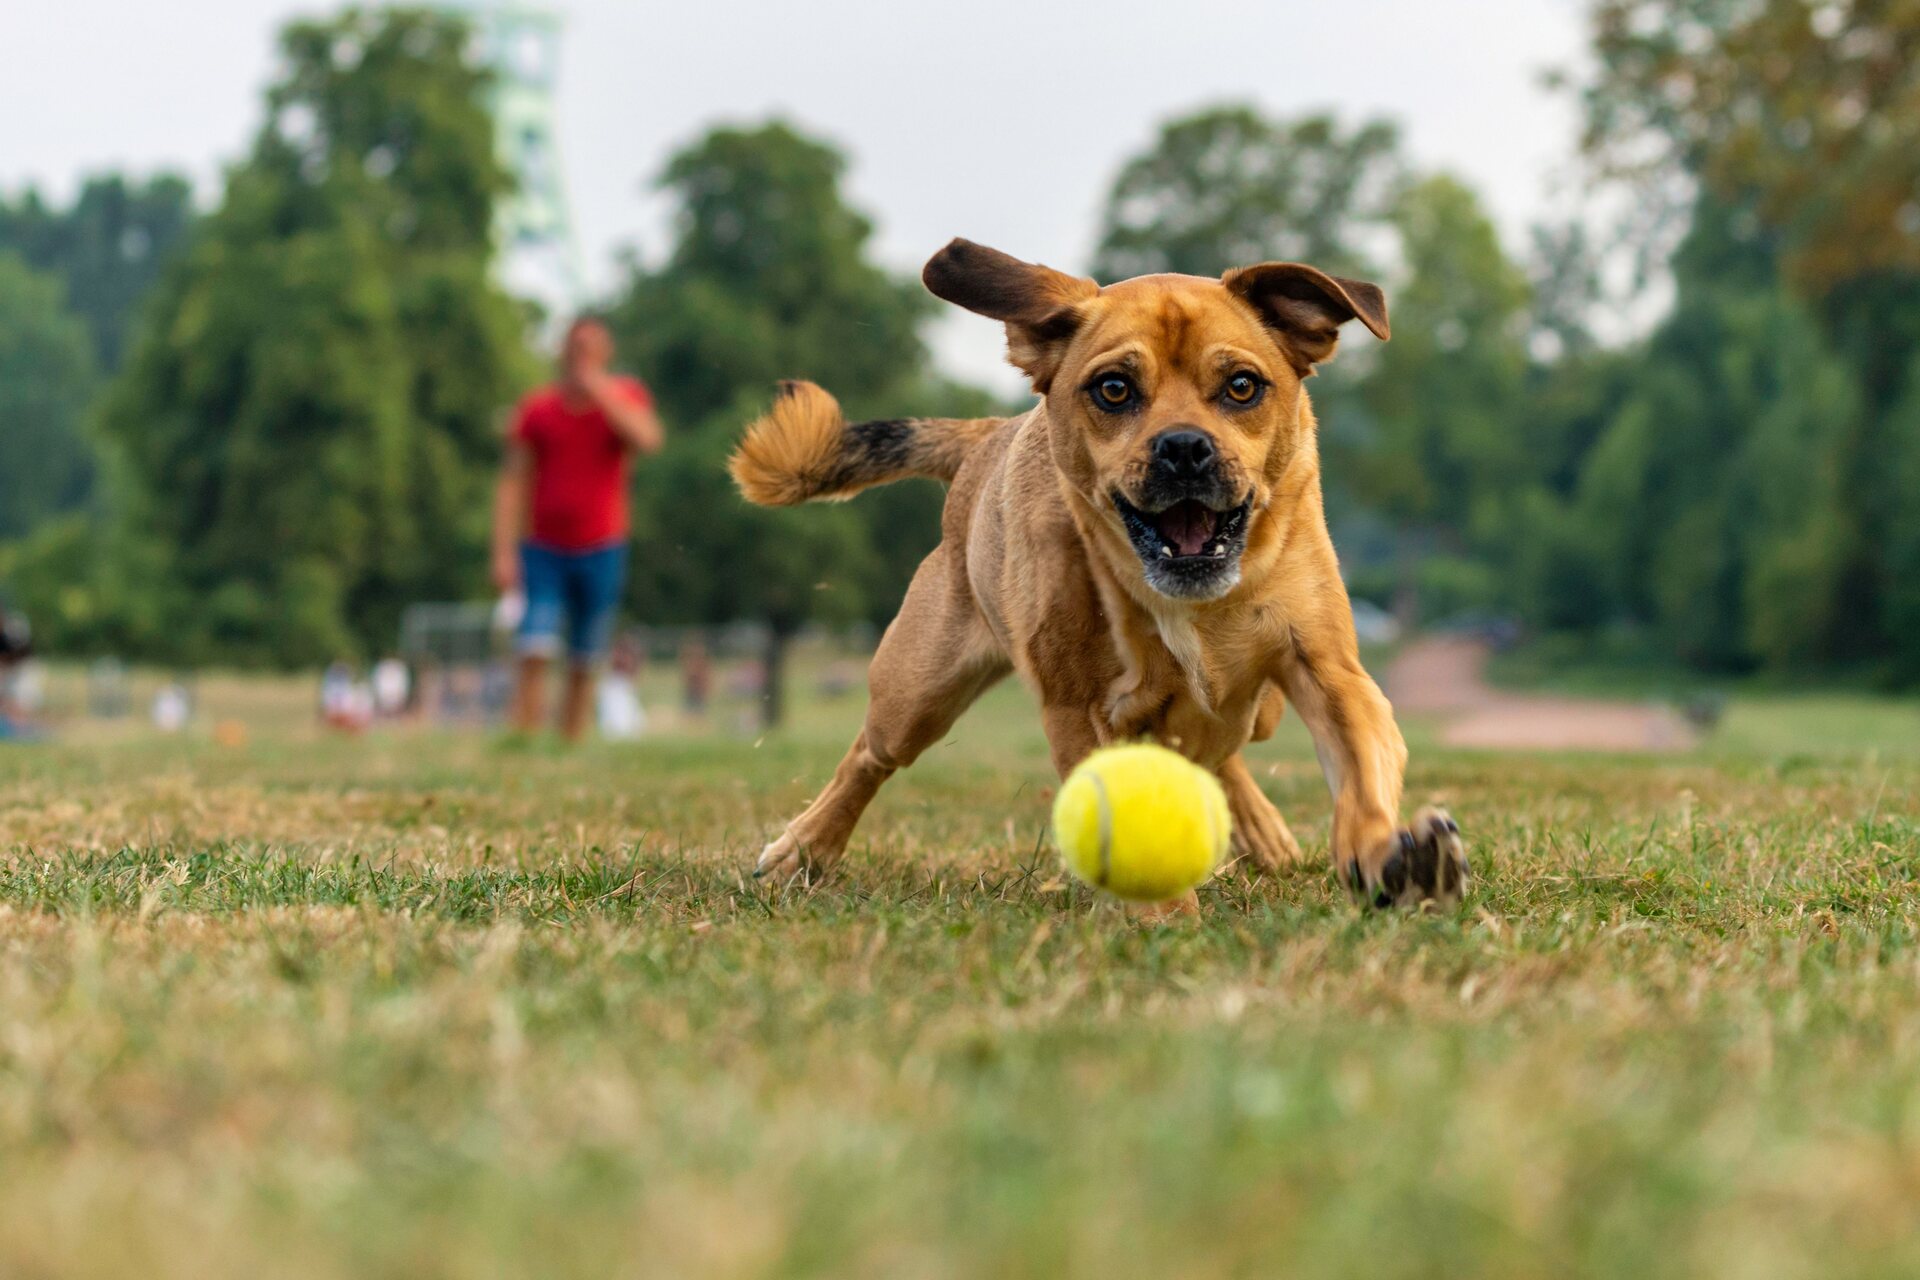 A dog running after a ball at a park